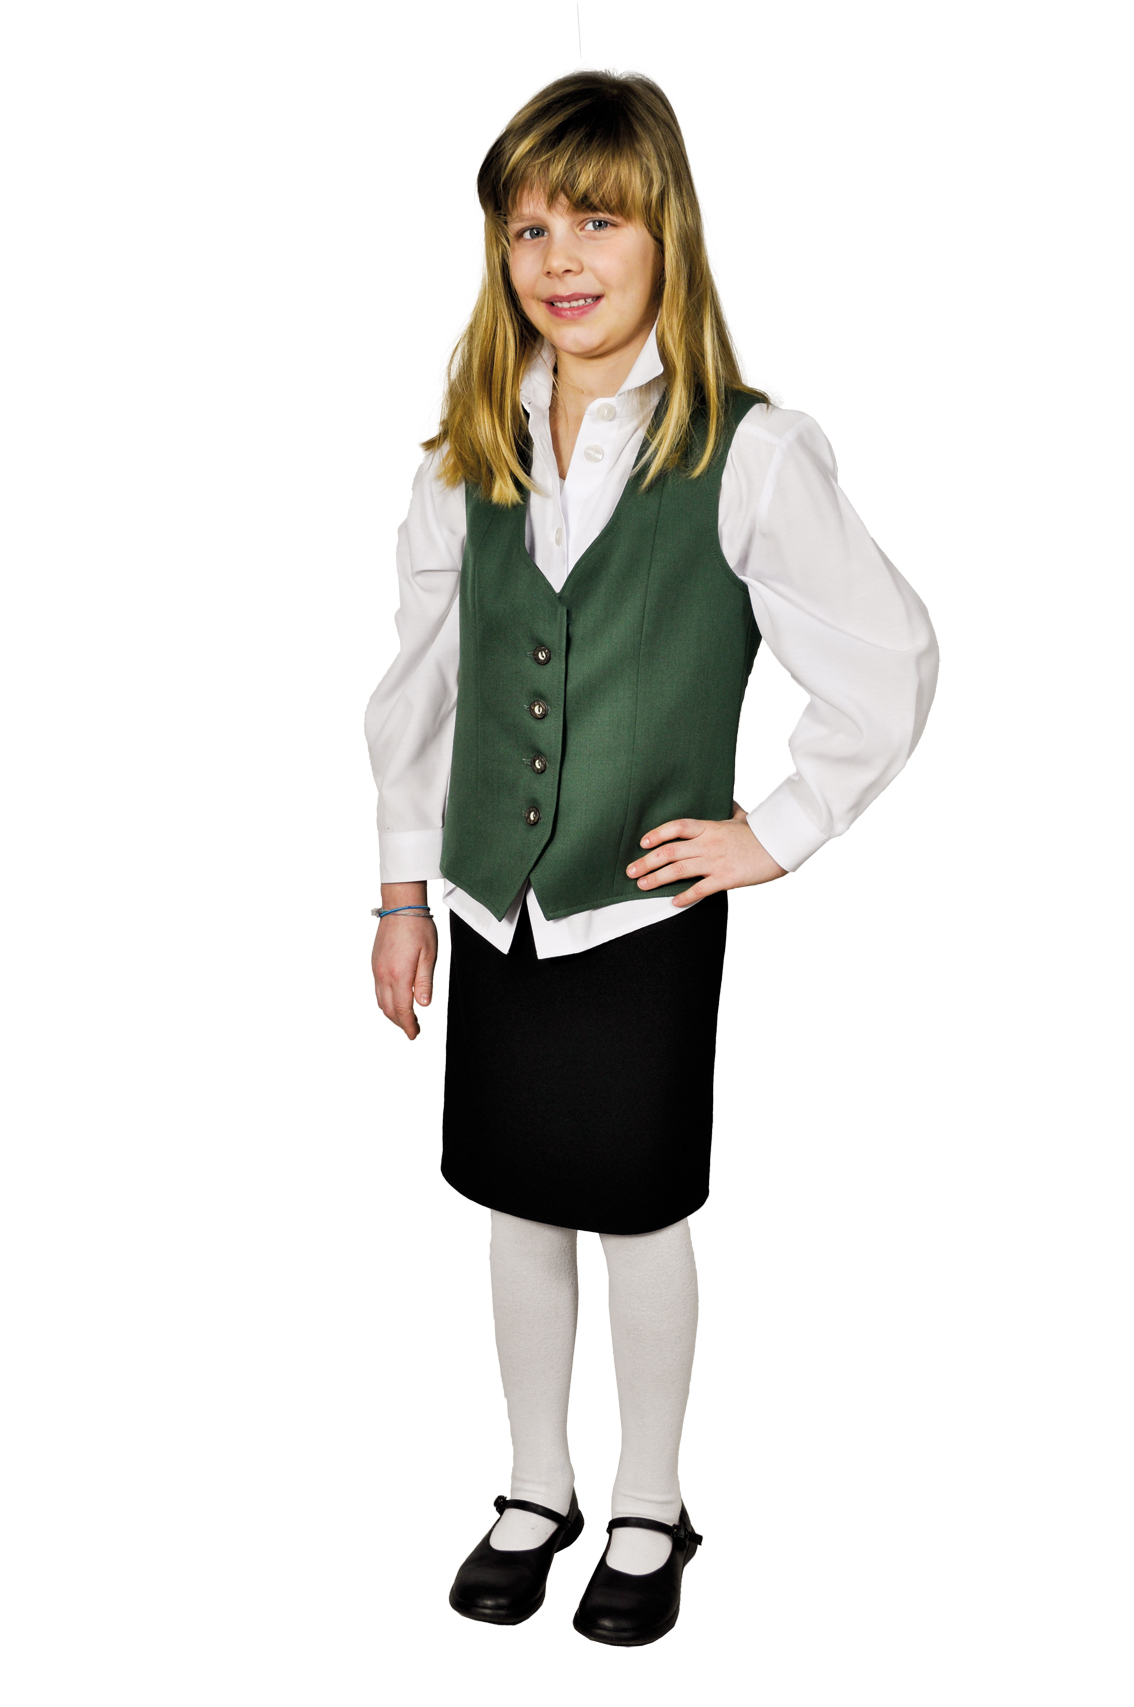 Kinder-Uniformrock, 52 cm lang